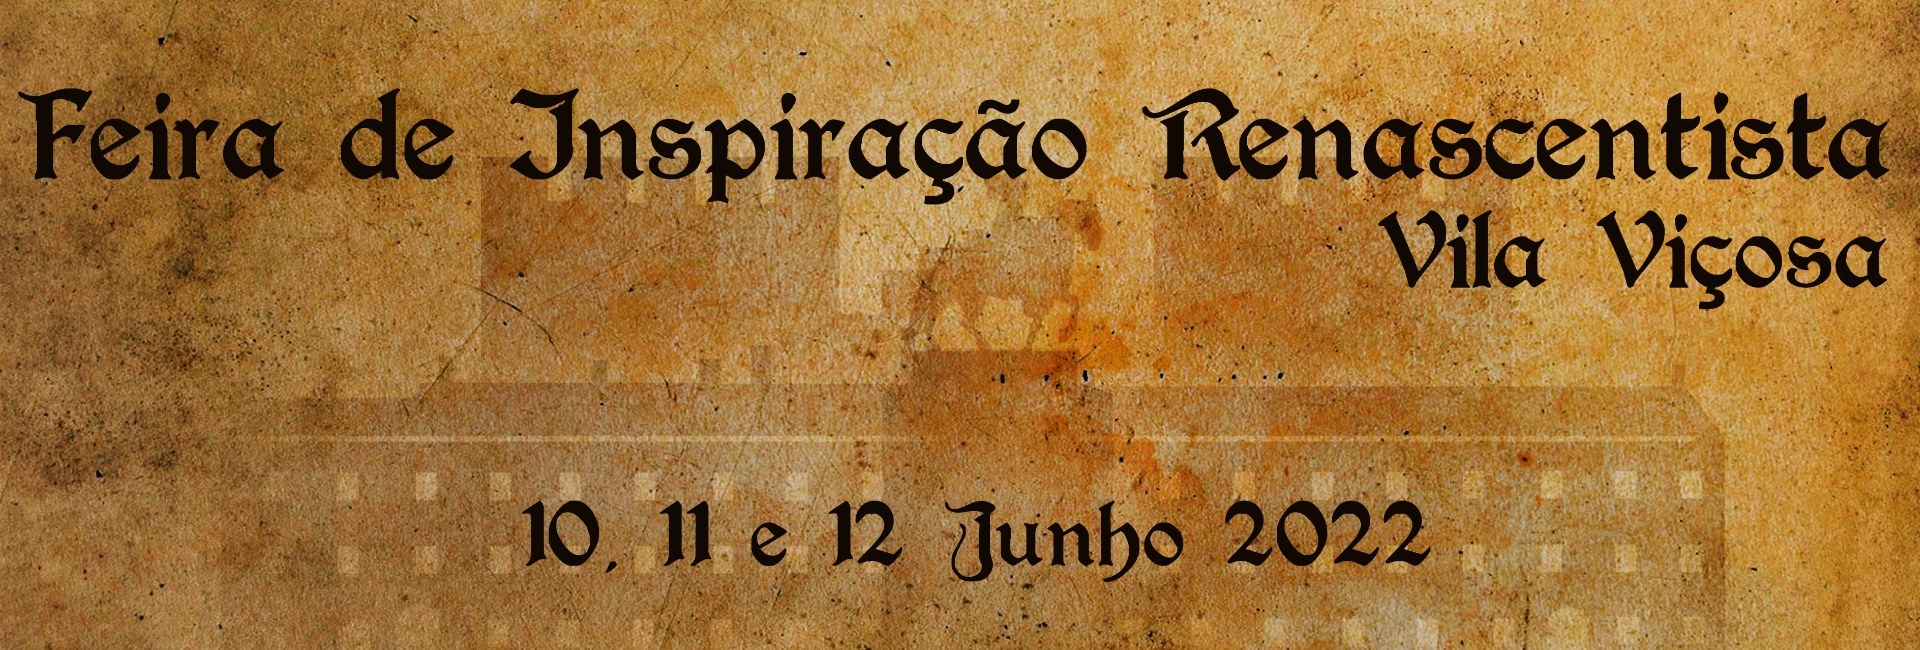 Feira de Inspiração Renascentista Vila Viçosa – 10, 11 e 12 junho 2022